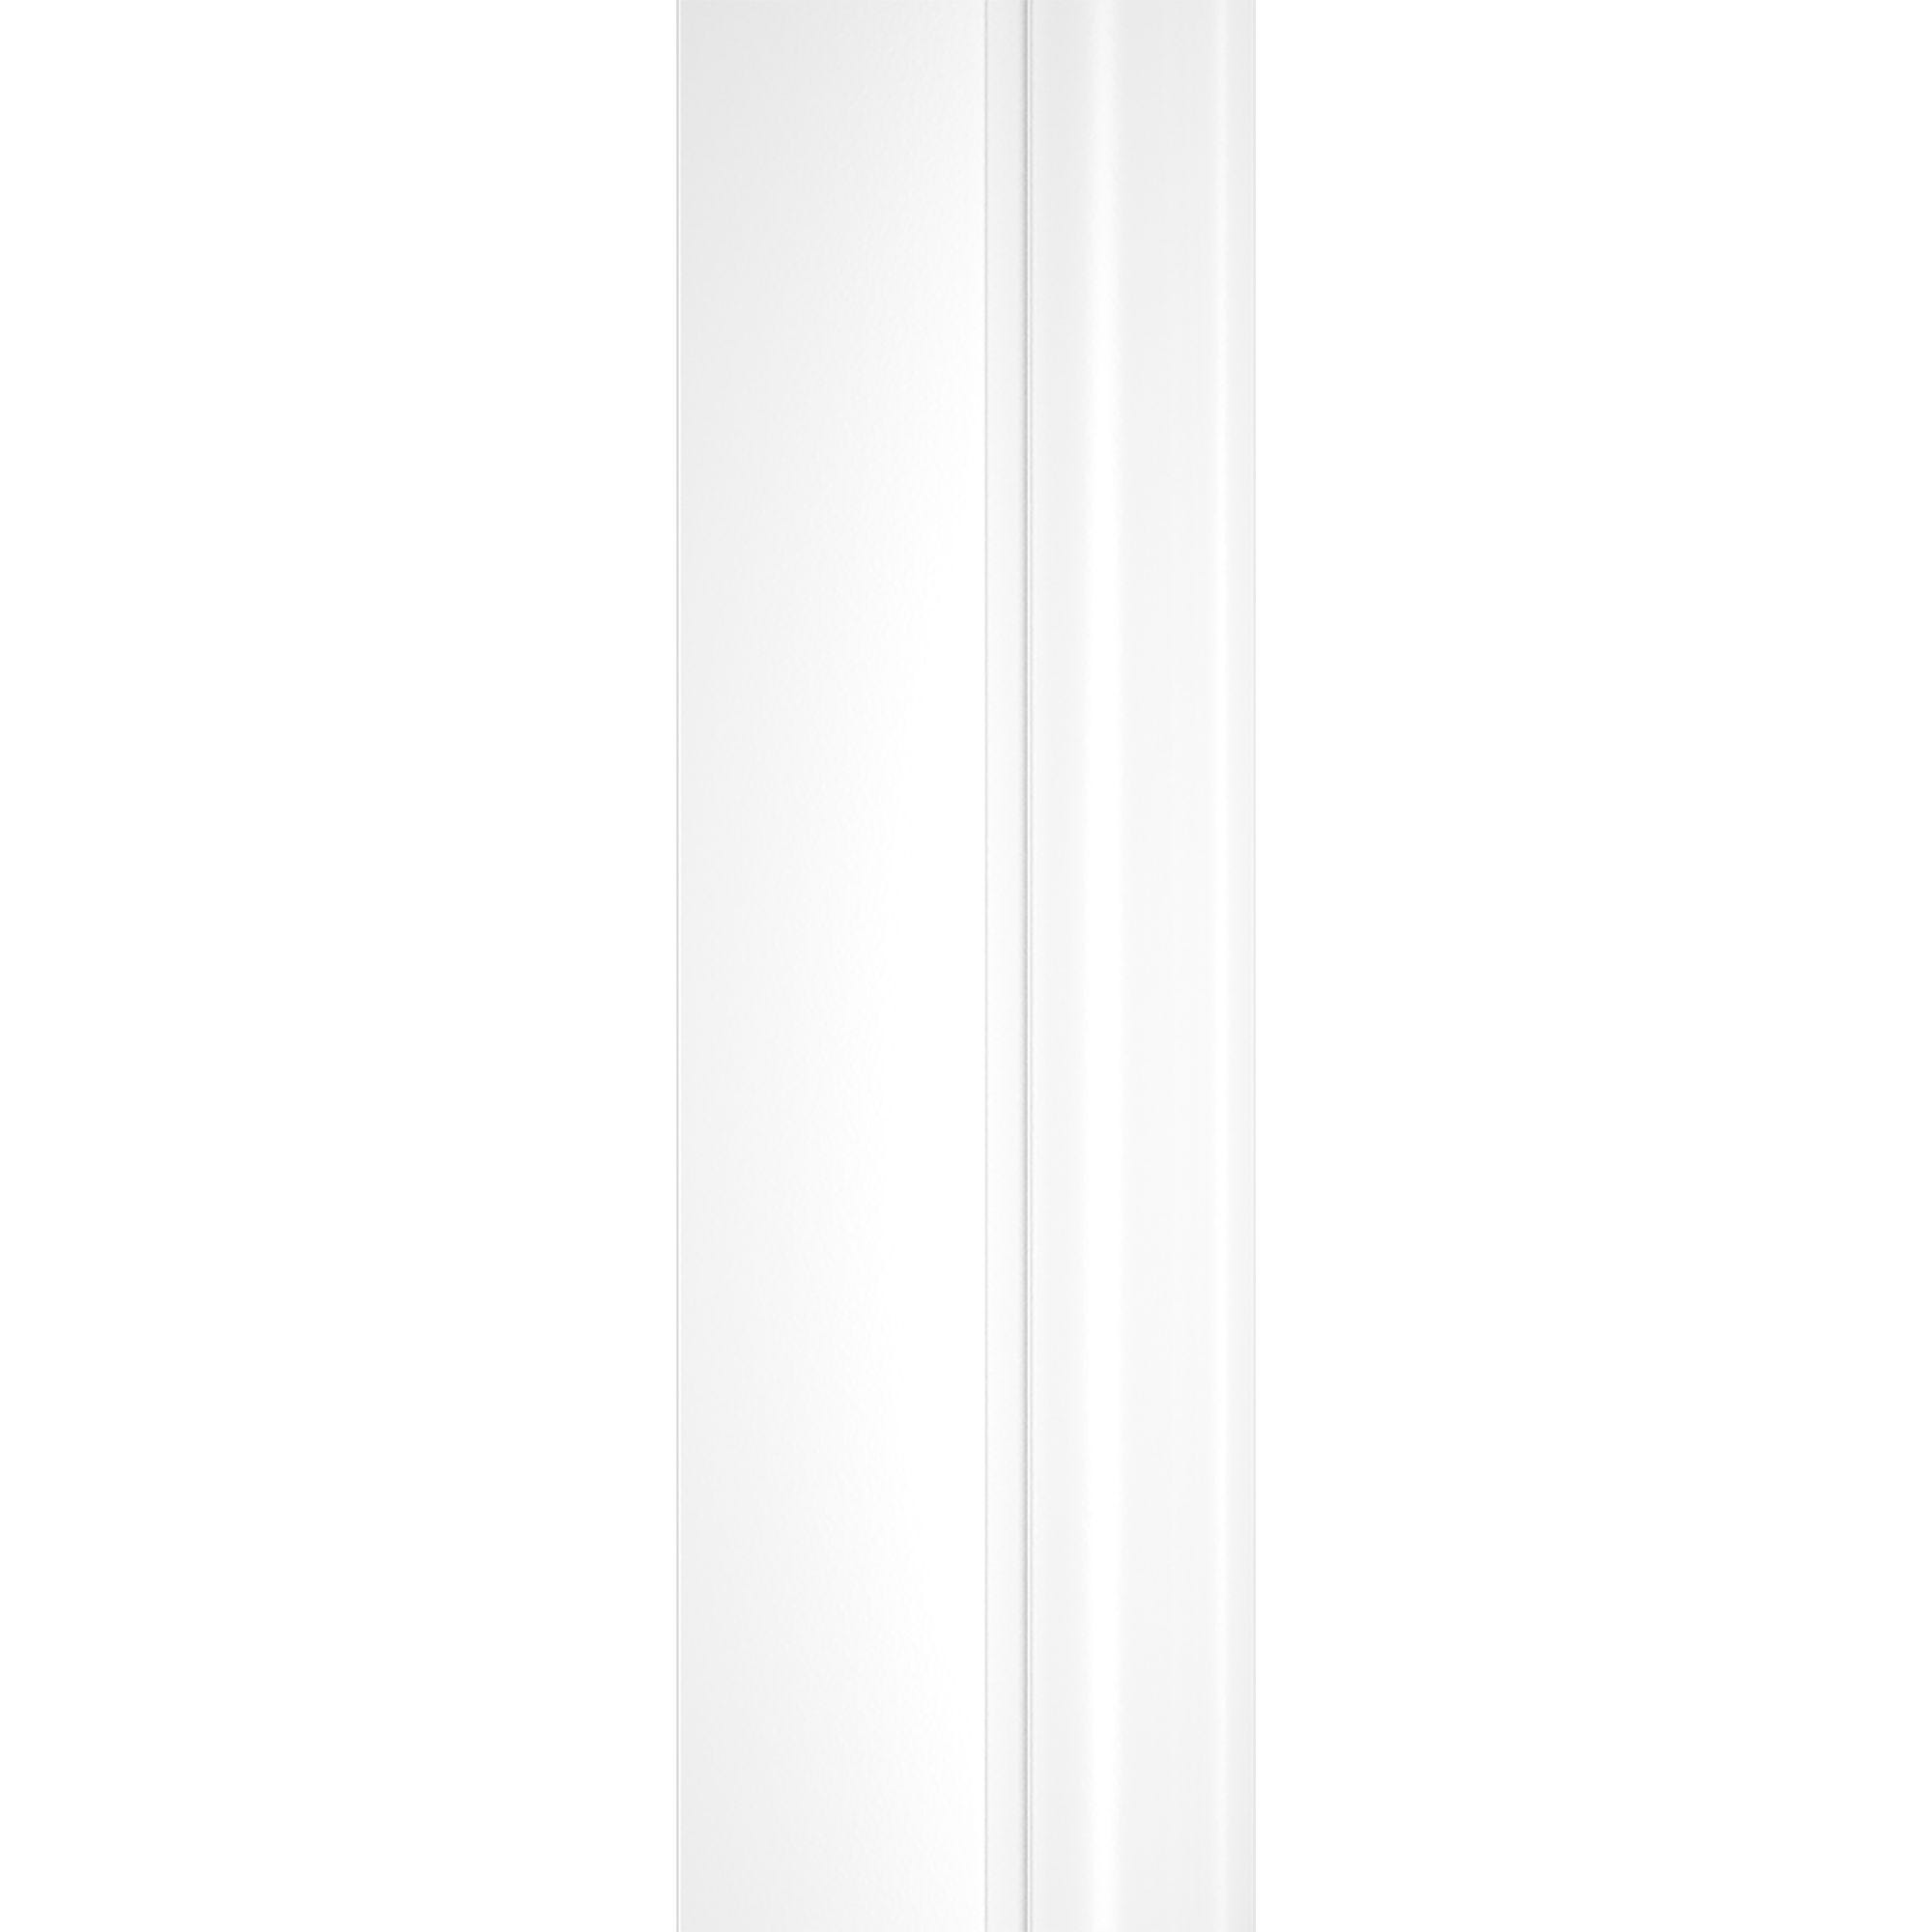 Schulte pare-baignoire pivotant, 114 x 140 cm, paroi de baignoire 2 volets, écran de baignoire, verre 3 mm, profilé blanc, décor rayures horizontales 3